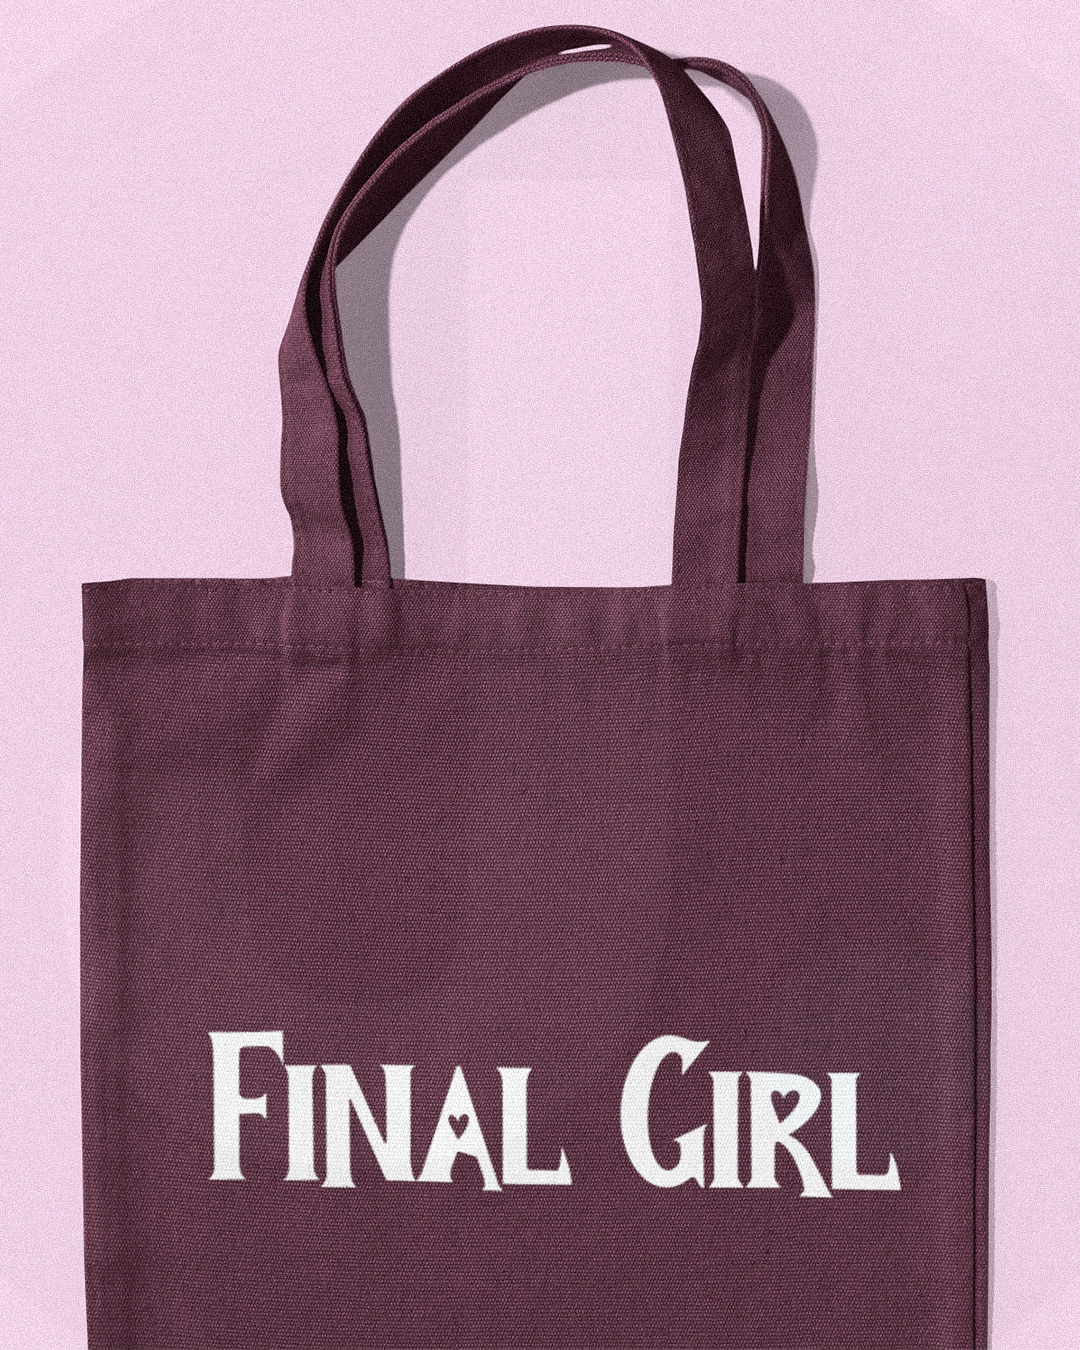 Final Girl Tote Bag - Halloween Horror Film Scream Inspired Final Girls Tote Bag - Final Girl Halloween Tote Bag